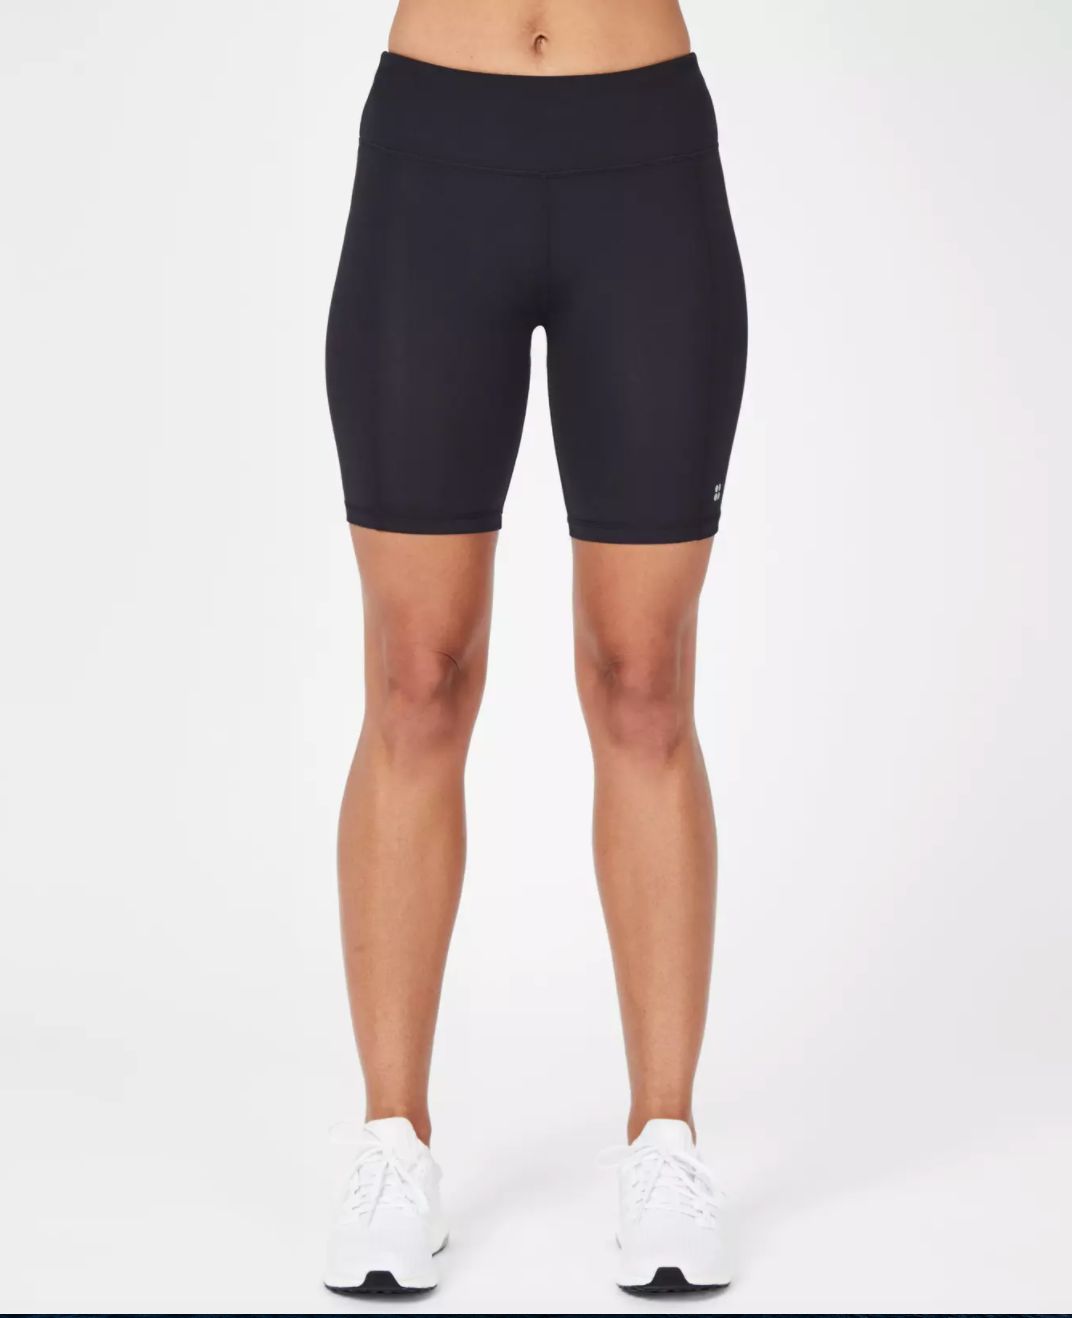 women's high waisted bike shorts